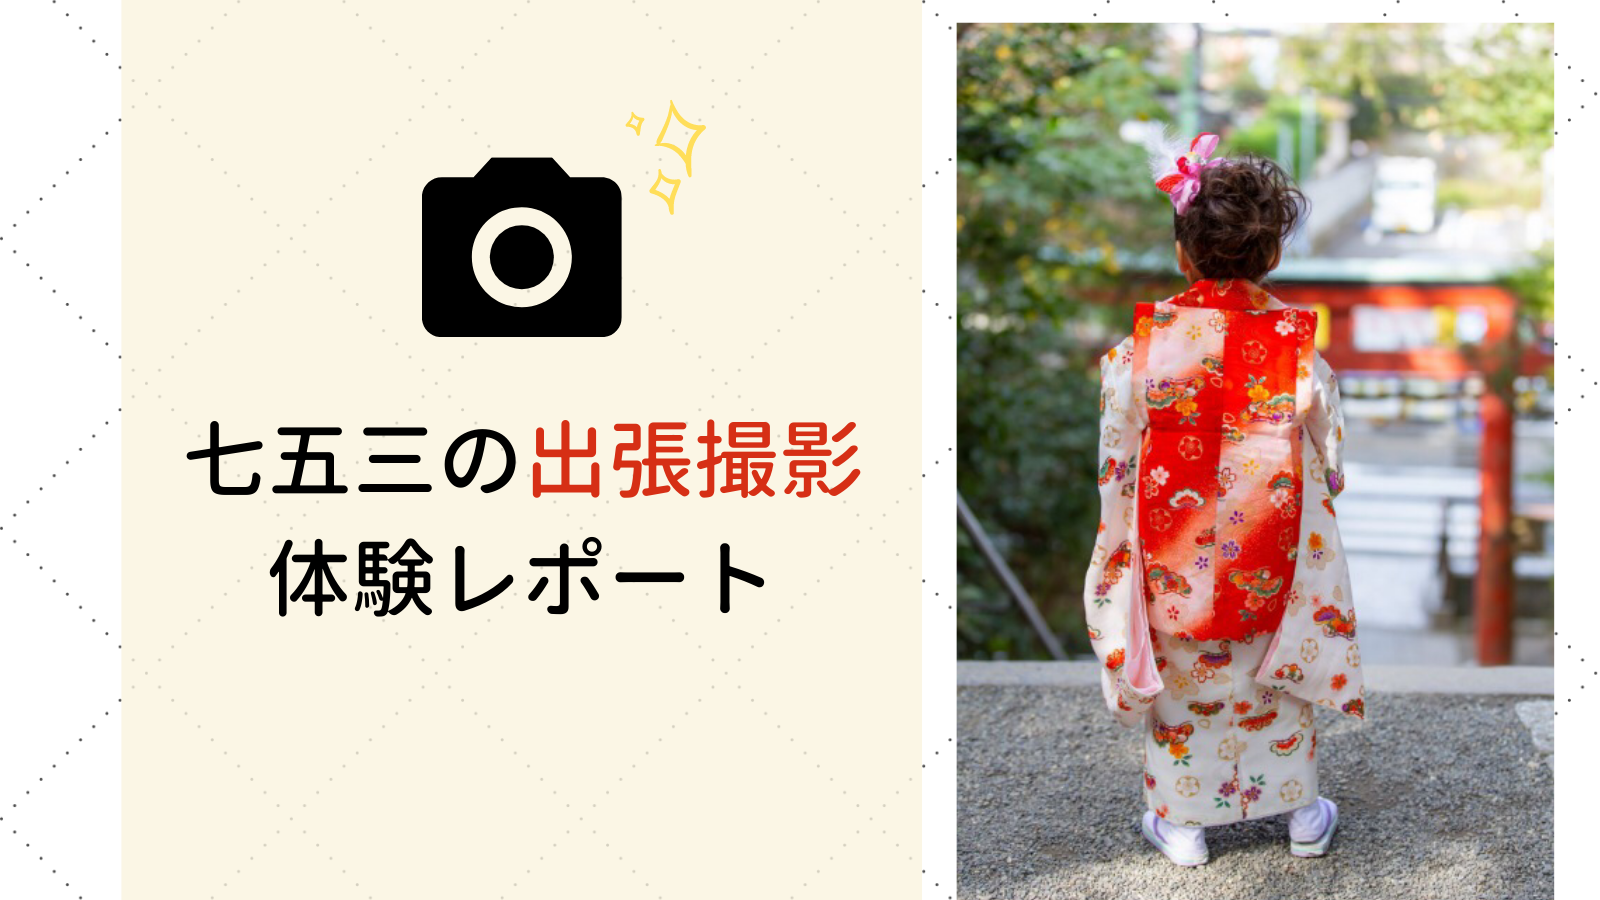 鶴岡八幡宮での七五三の出張撮影の体験談をブログで紹介。